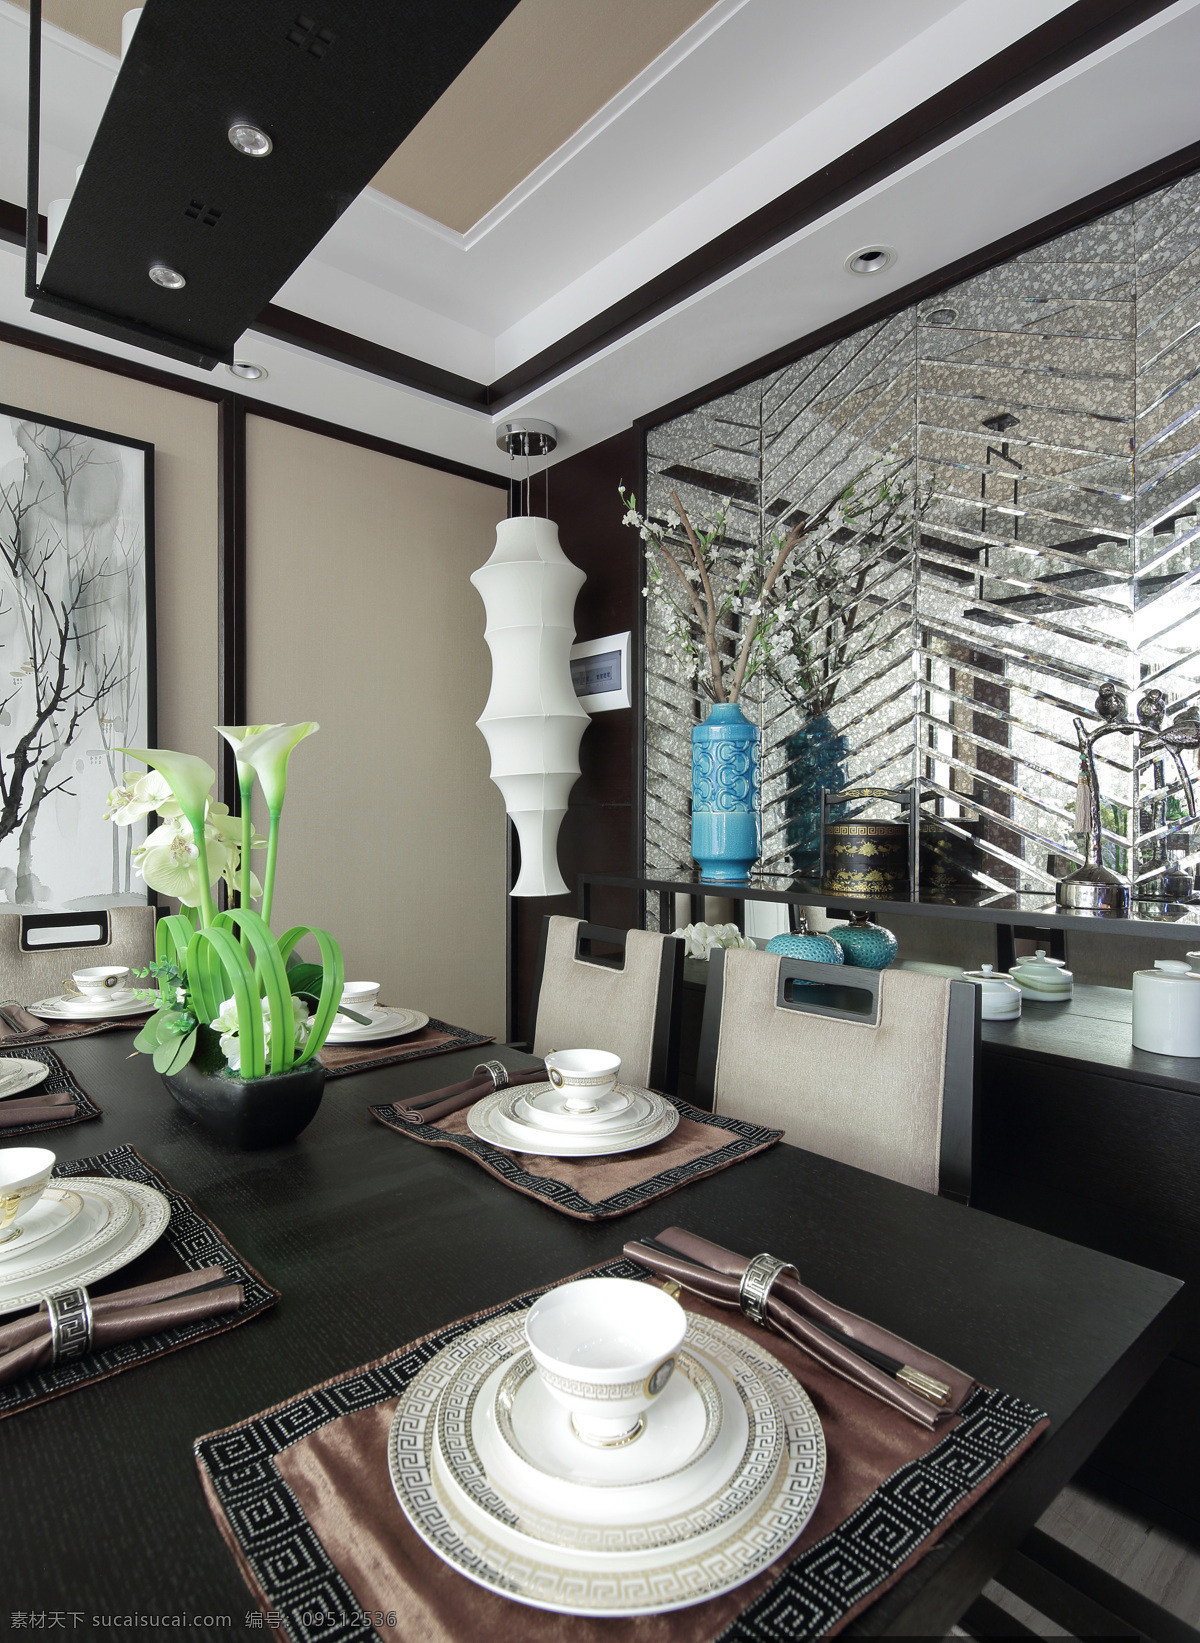 室内 餐厅 中西 融合 装修 效果图 精美 中式水墨画 欧式餐具 清新园艺 黄色餐桌 白色瓷器